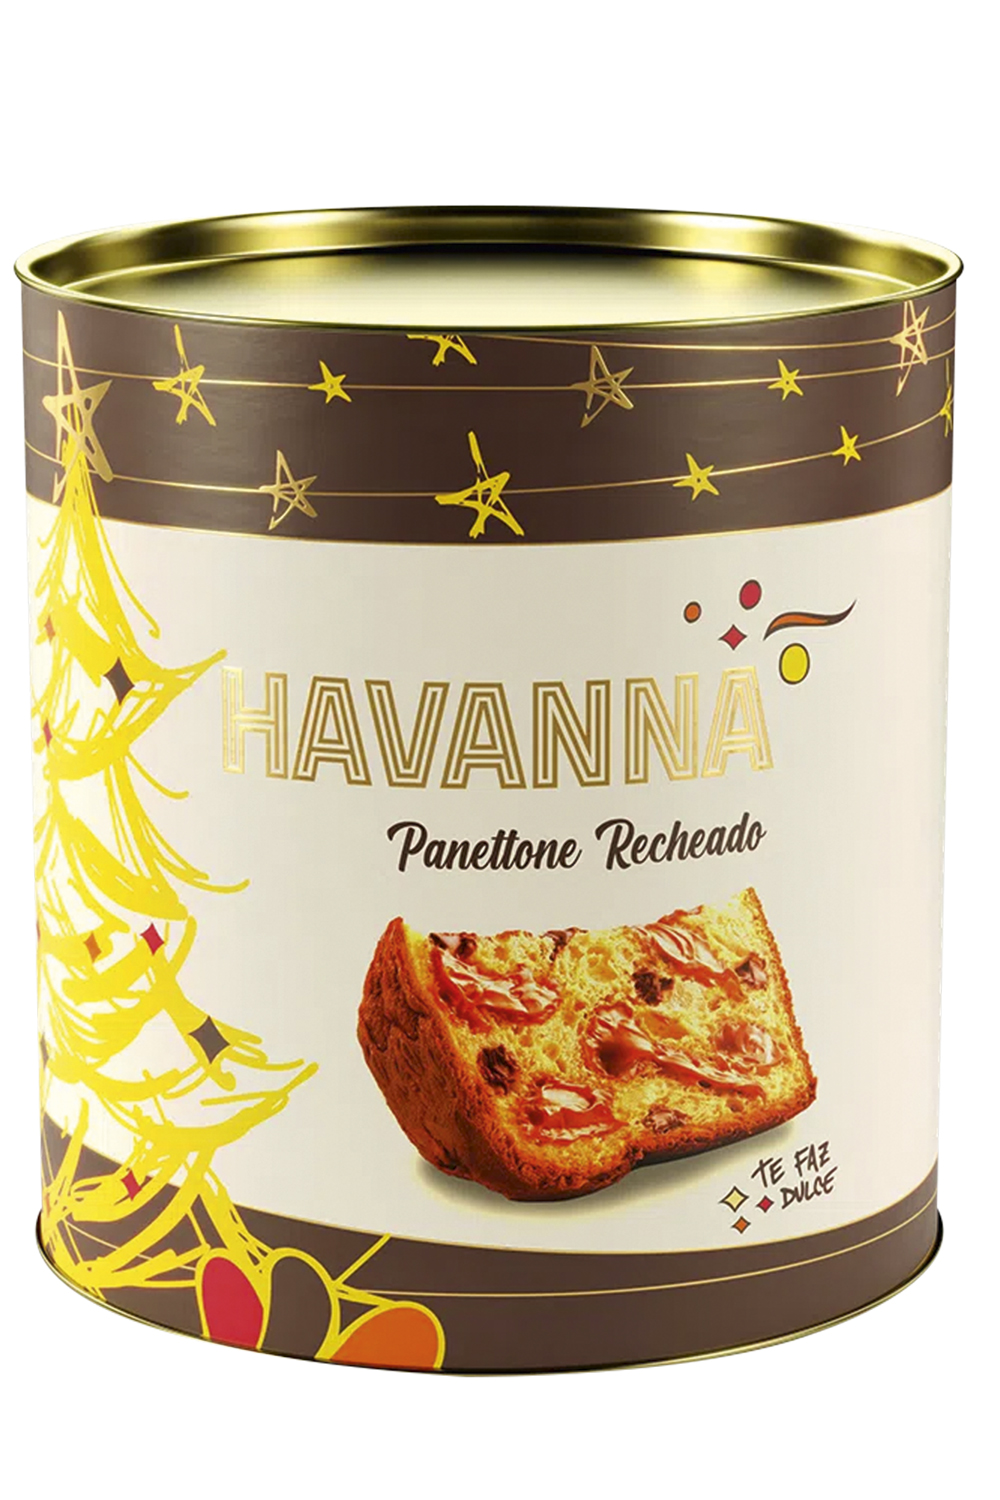 Havanna, de gotas de chocolate e doce de leite (R$ 96,00, 700 gramas)